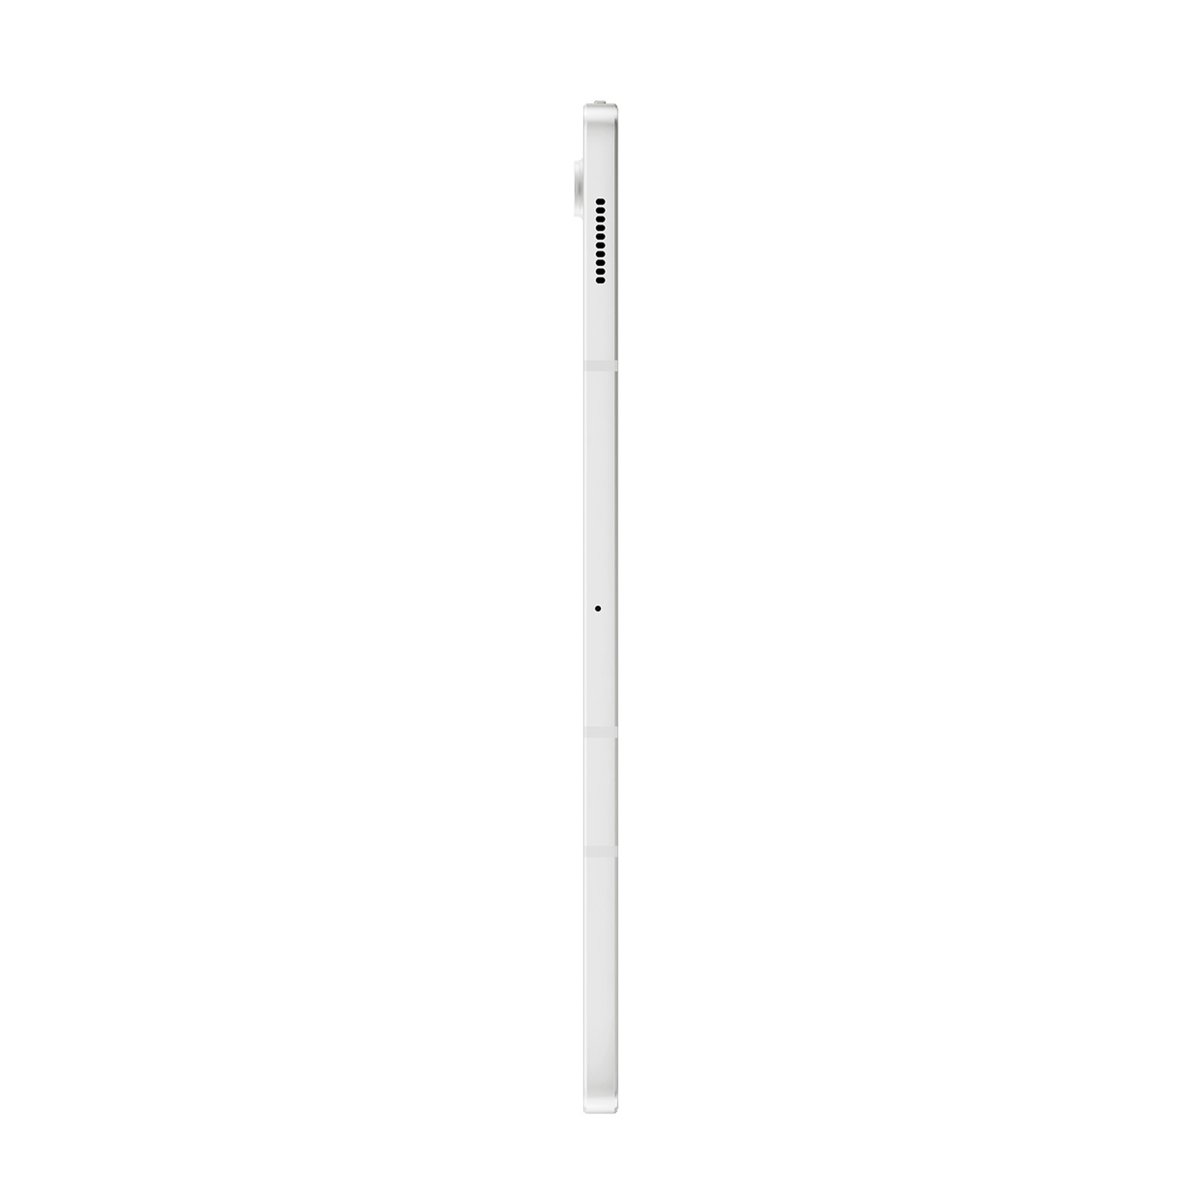 Samsung Galaxy Tab S7 FE-T733 12.4inch 64GB ,Mystic Silver